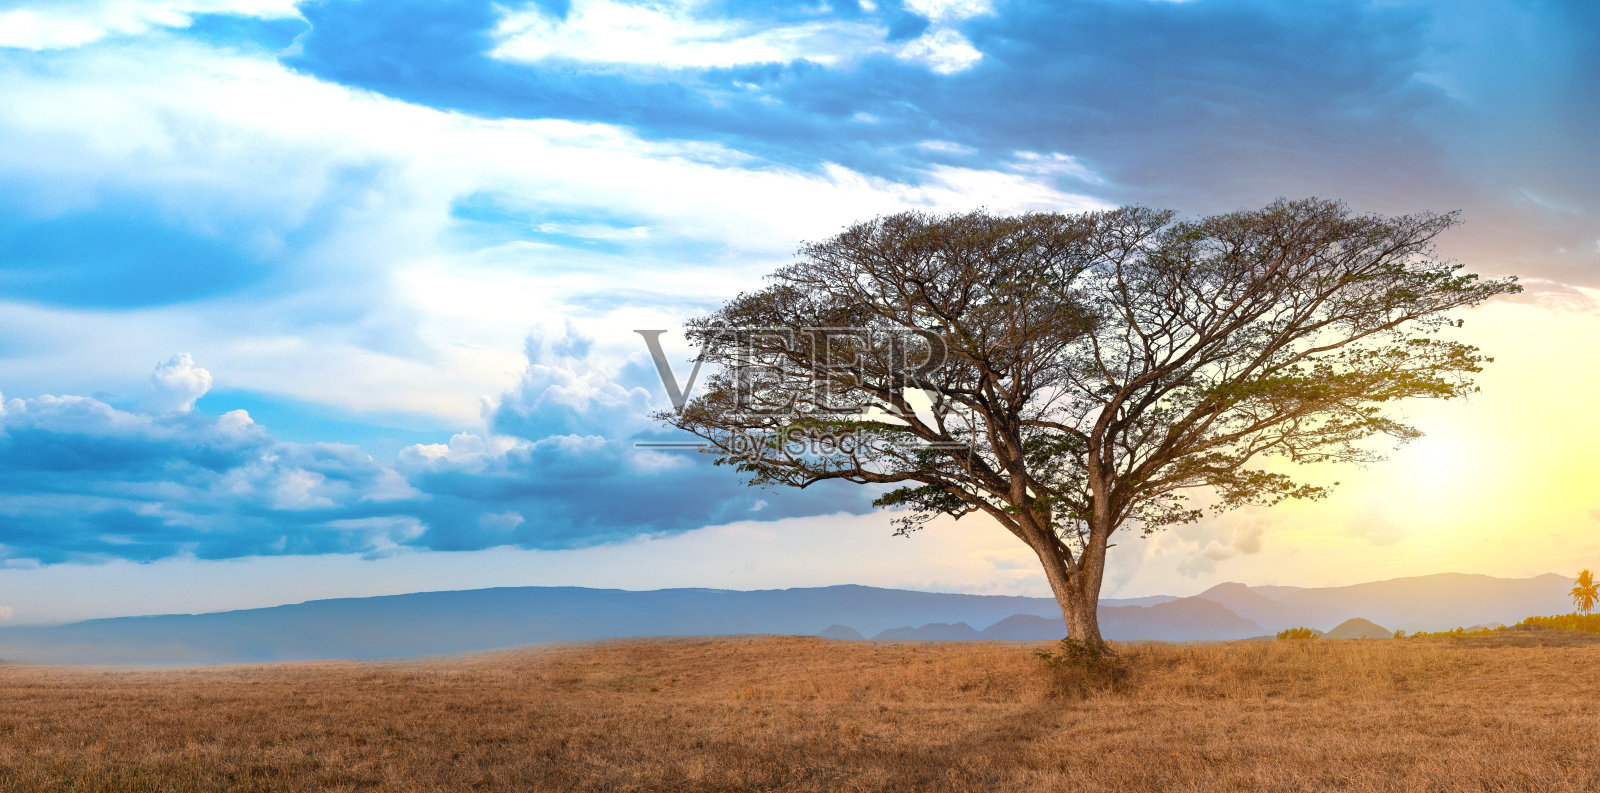 夏季景观与一个孤独的大树在日落草地上的蓝天和云的背景，美丽的树木来自泰国的名字:东印度核桃或猴子荚Samanea saman (Jacq)。稳定照片摄影图片